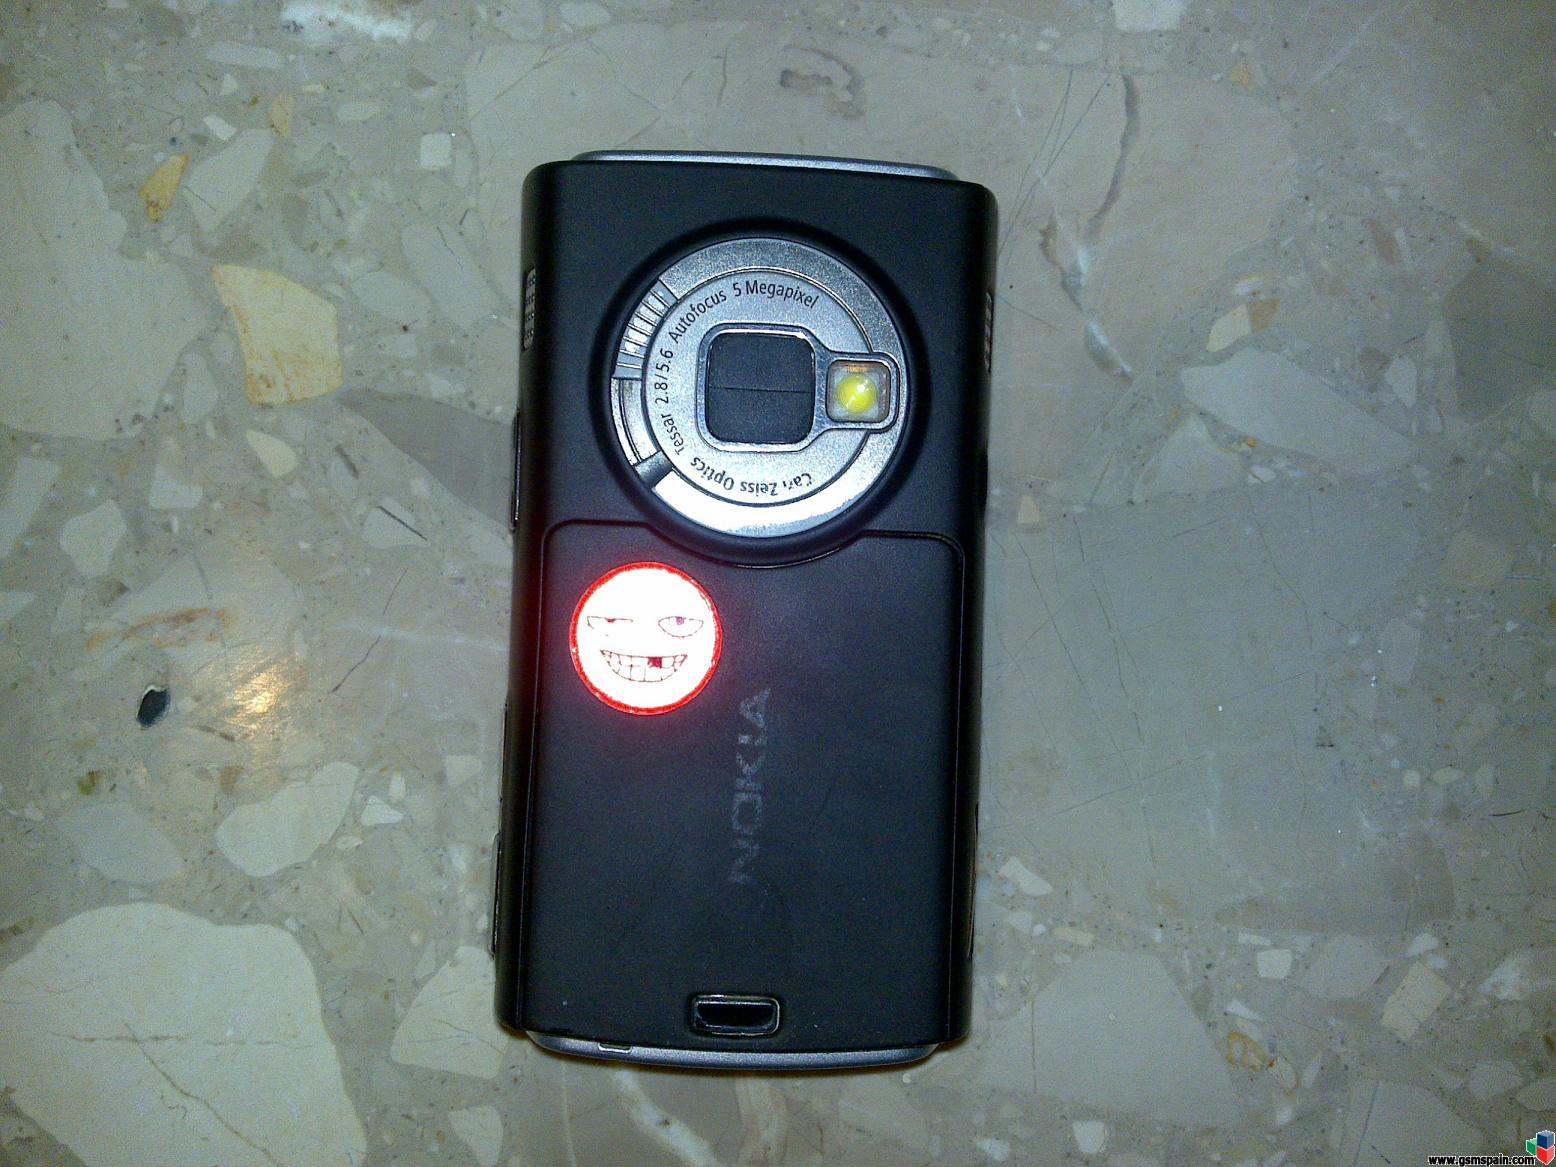 Nokia N95-1